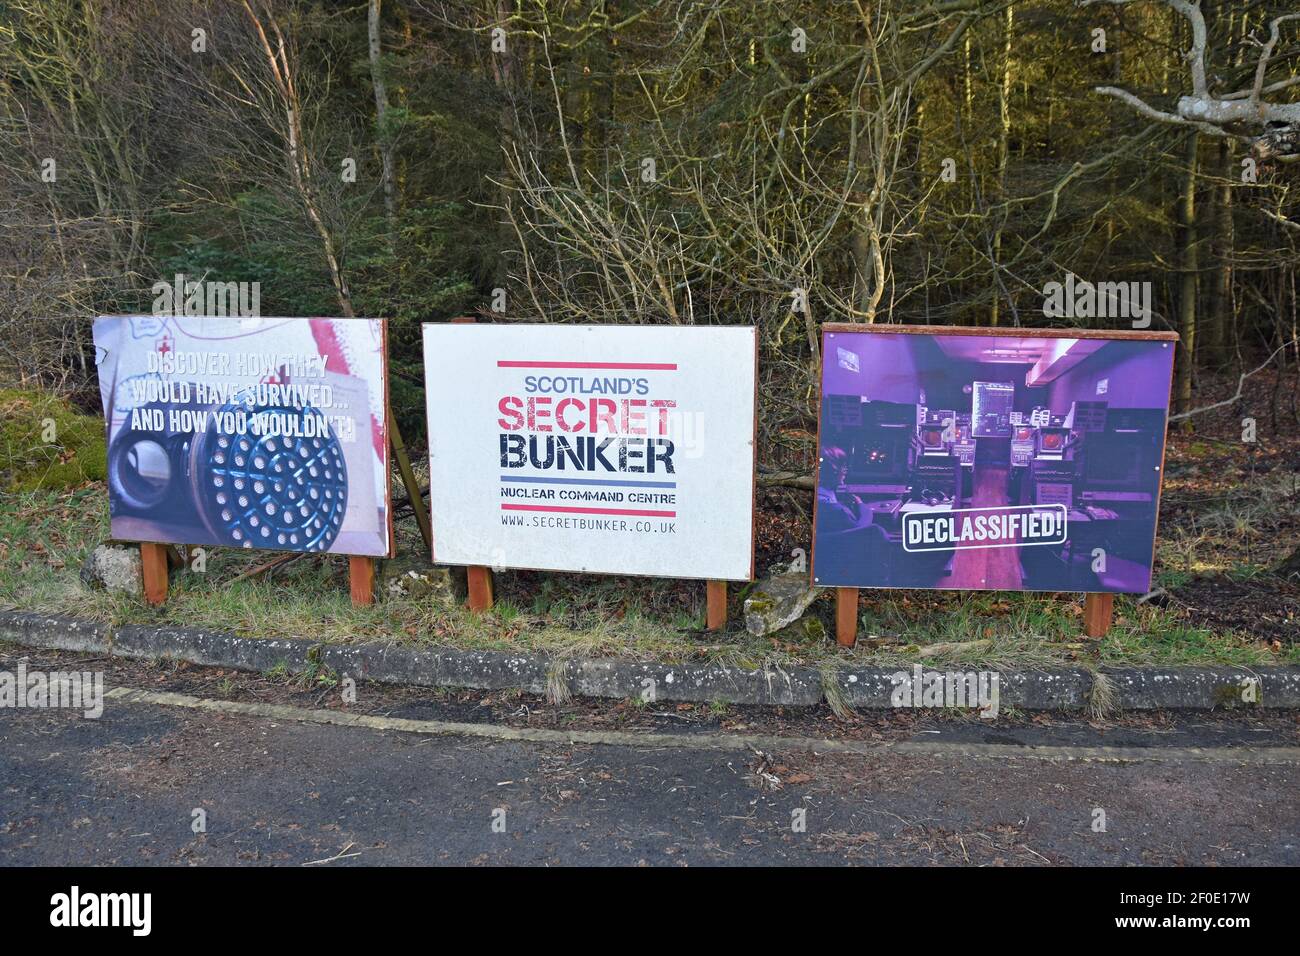 Schilder an der Einfahrtsstraße zum Secret Bunker in Fife, Schottland, die die Attraktion anzeigen. Dies ist ein Atombunker aus dem Kalten Krieg. Stockfoto